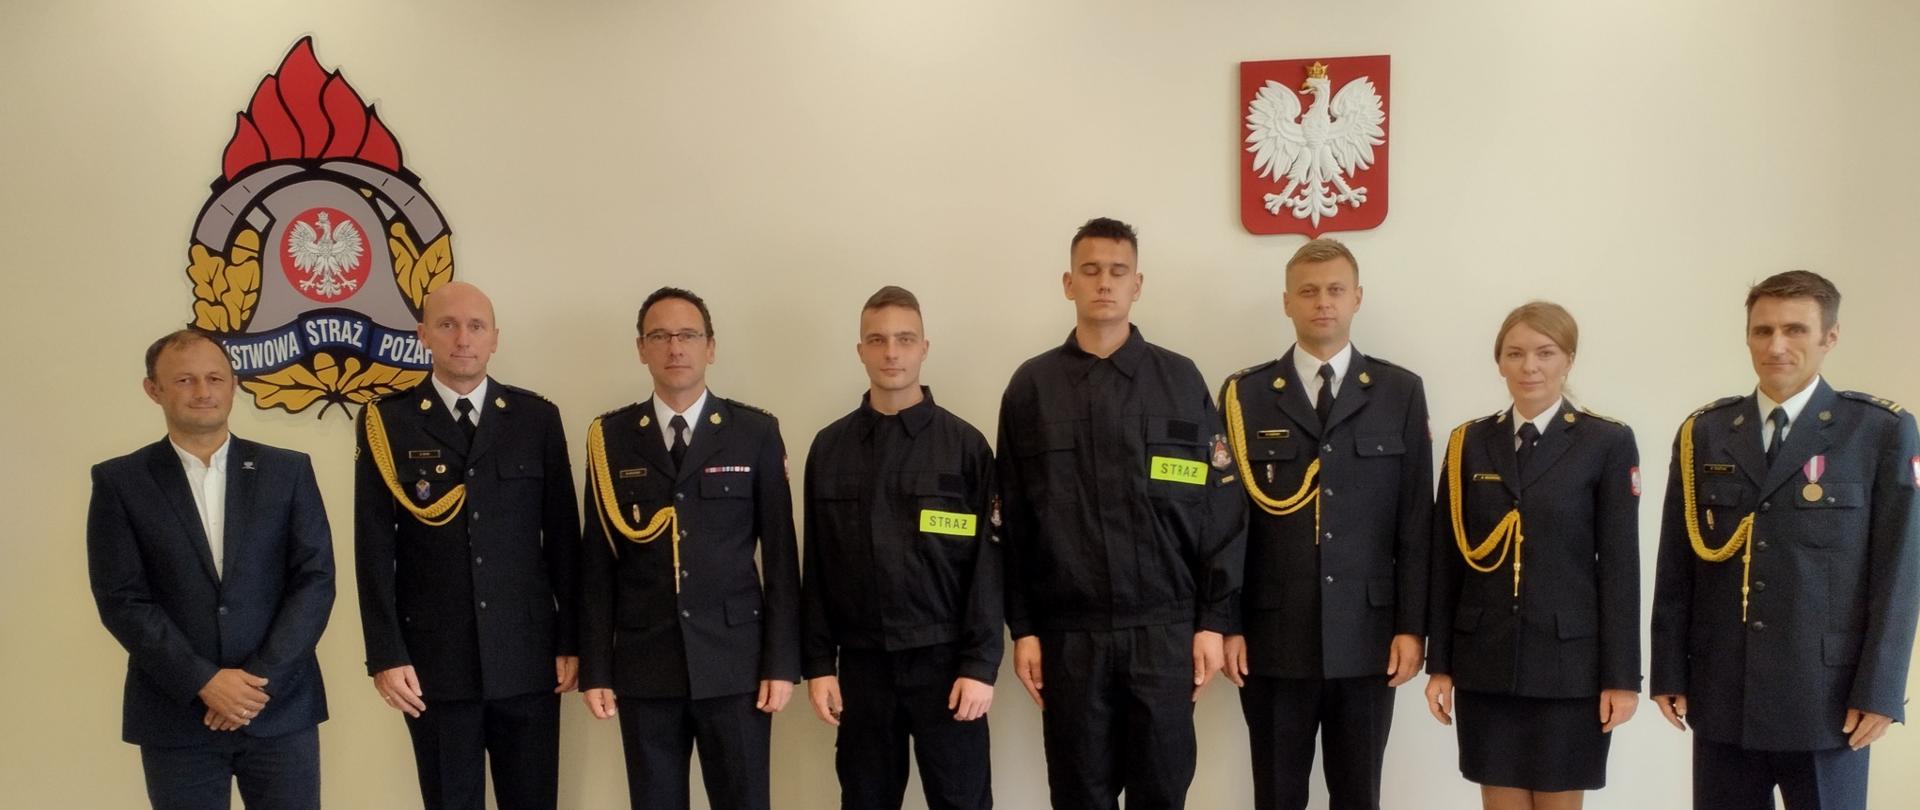 Uroczyste ślubowanie nowo przyjętych strażaków w Komendzie Miejskiej Państwowej Straży Pożarnej w Rybniku 